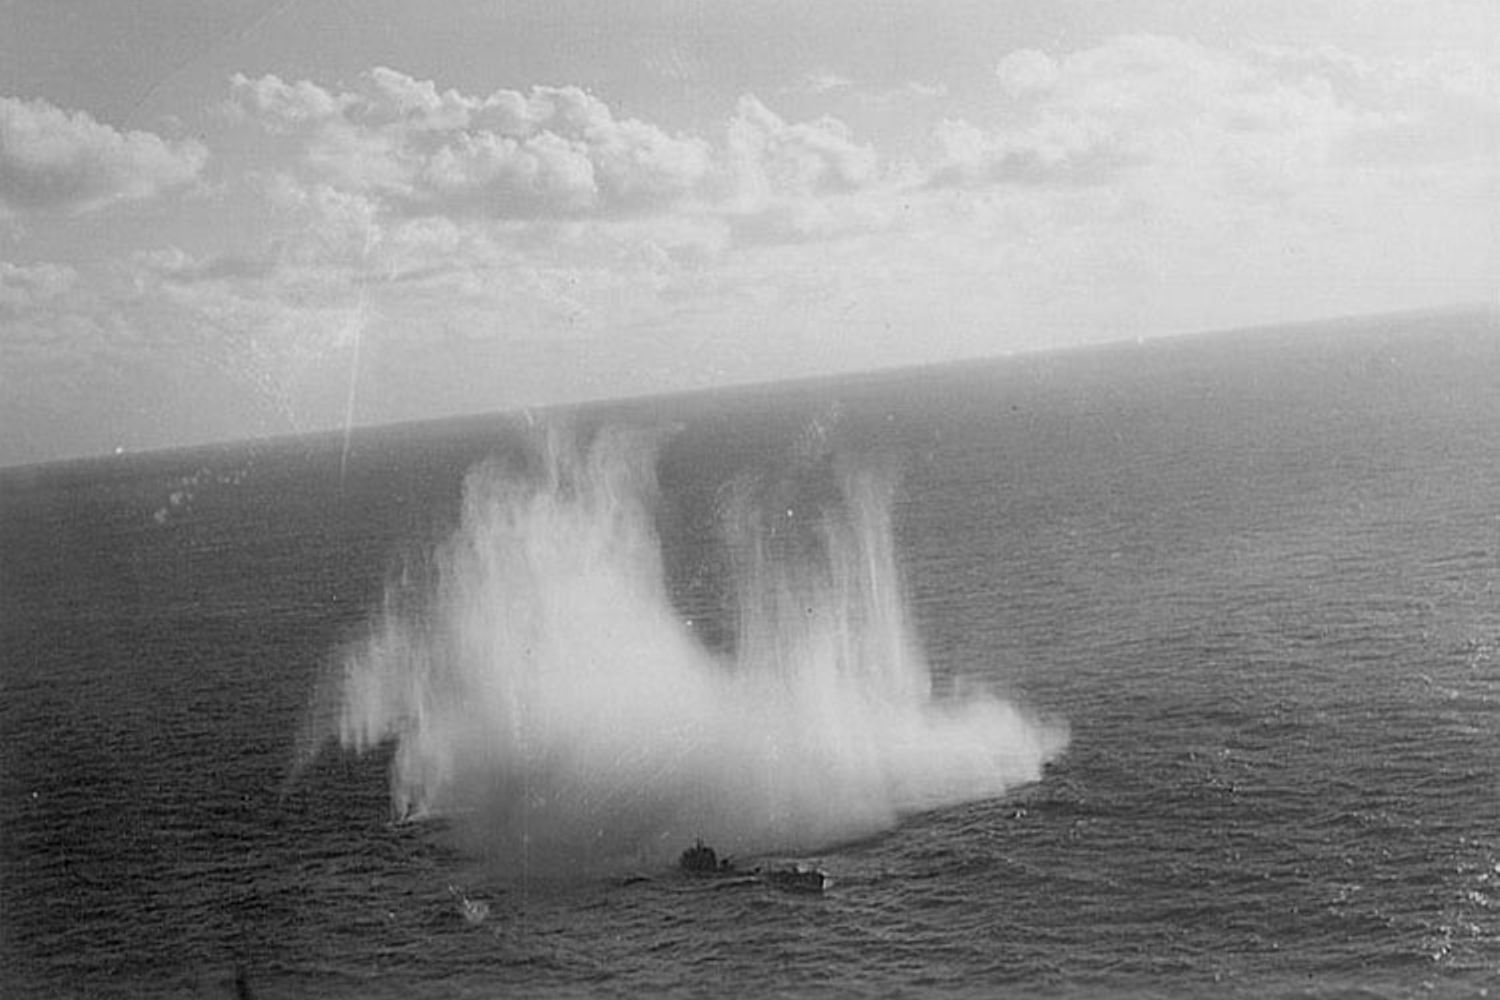 Ataque da Força Aérea dos Estados Unidos ao submarino U-507 